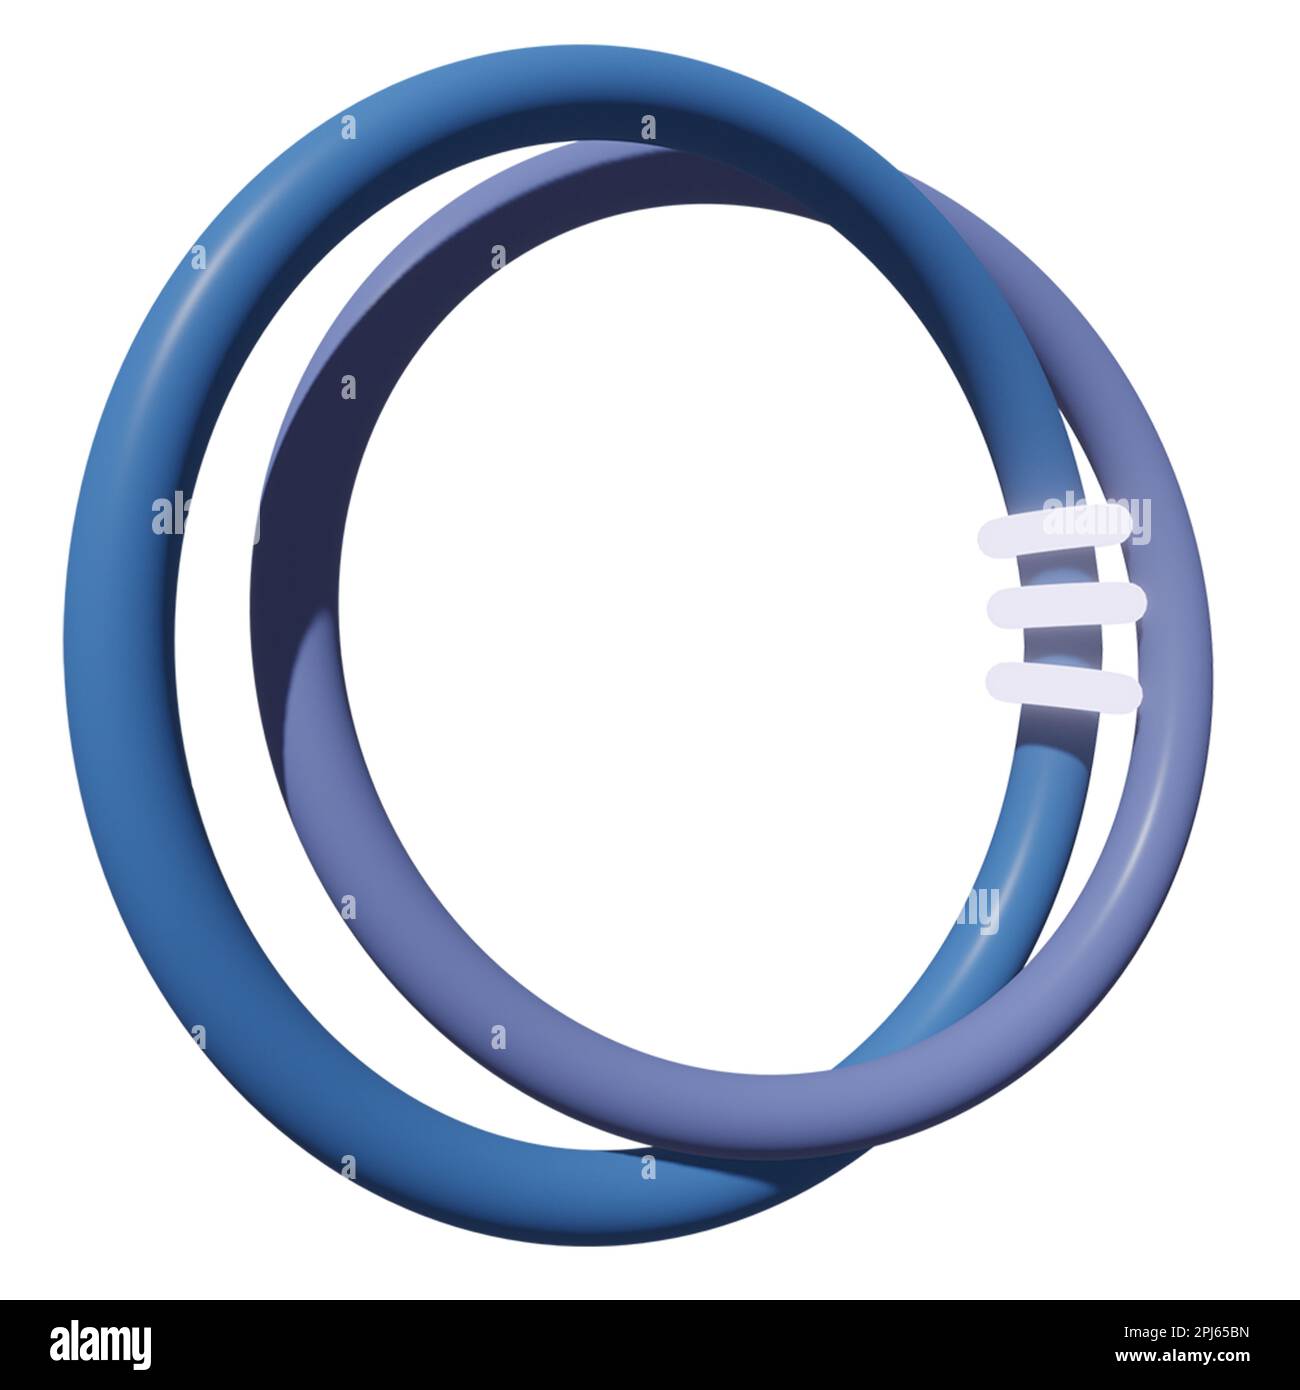 Ein Stockfoto von zwei ineinander greifenden blauen Ringen auf weißem Hintergrund mit verschiedenen Ausschnitten, die um sie verstreut sind Stockfoto